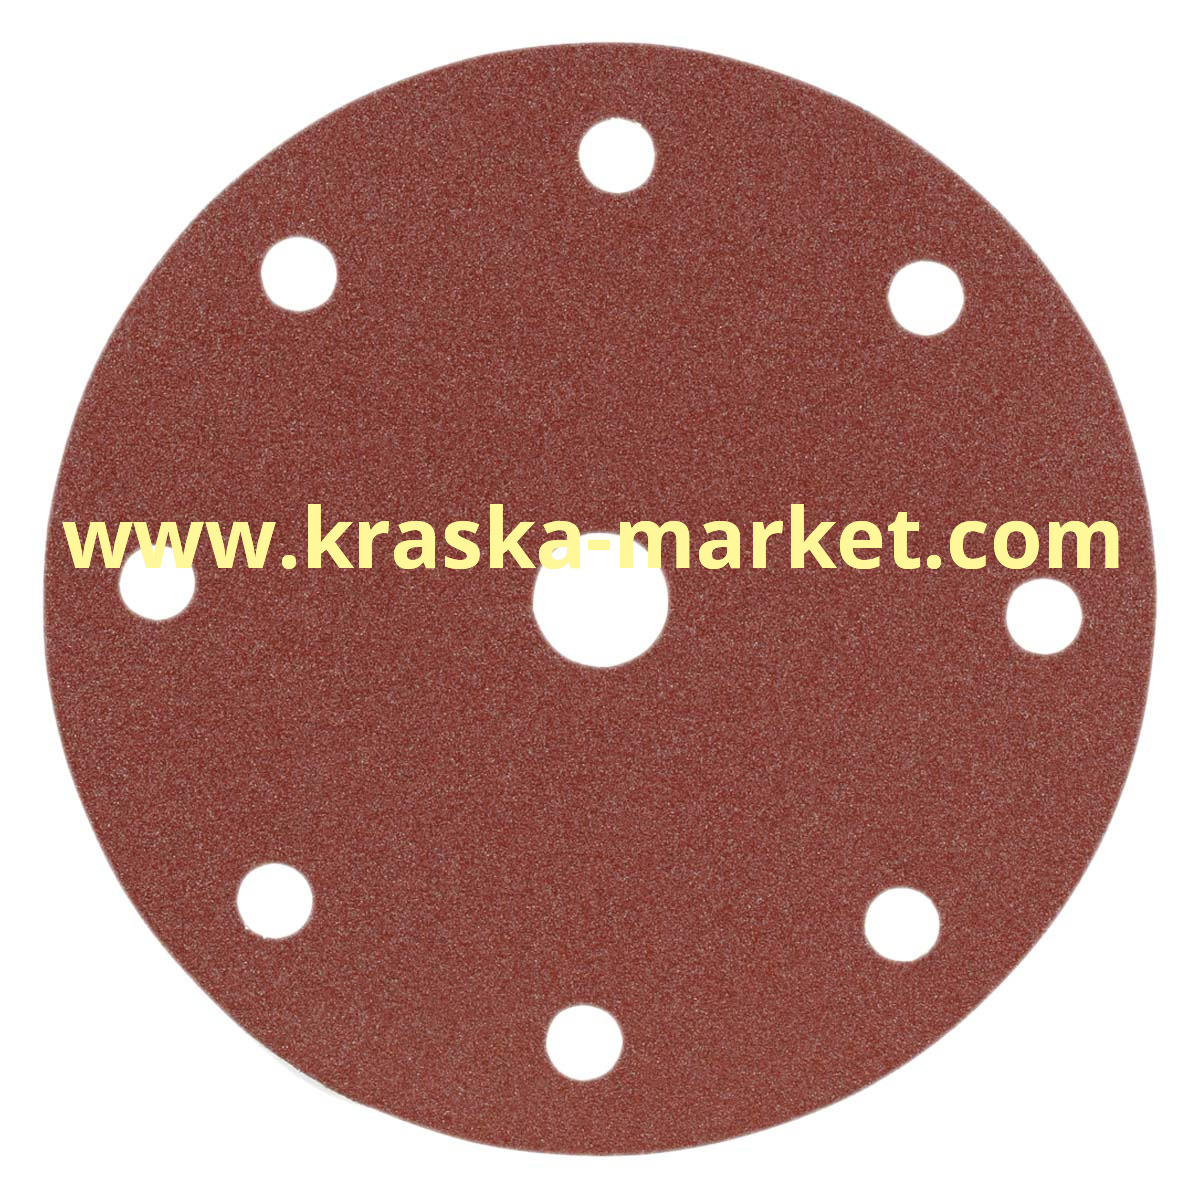 Круг абразивный, красный, 15 отверстий, Р150, 150 мм. Производитель: Indasa.